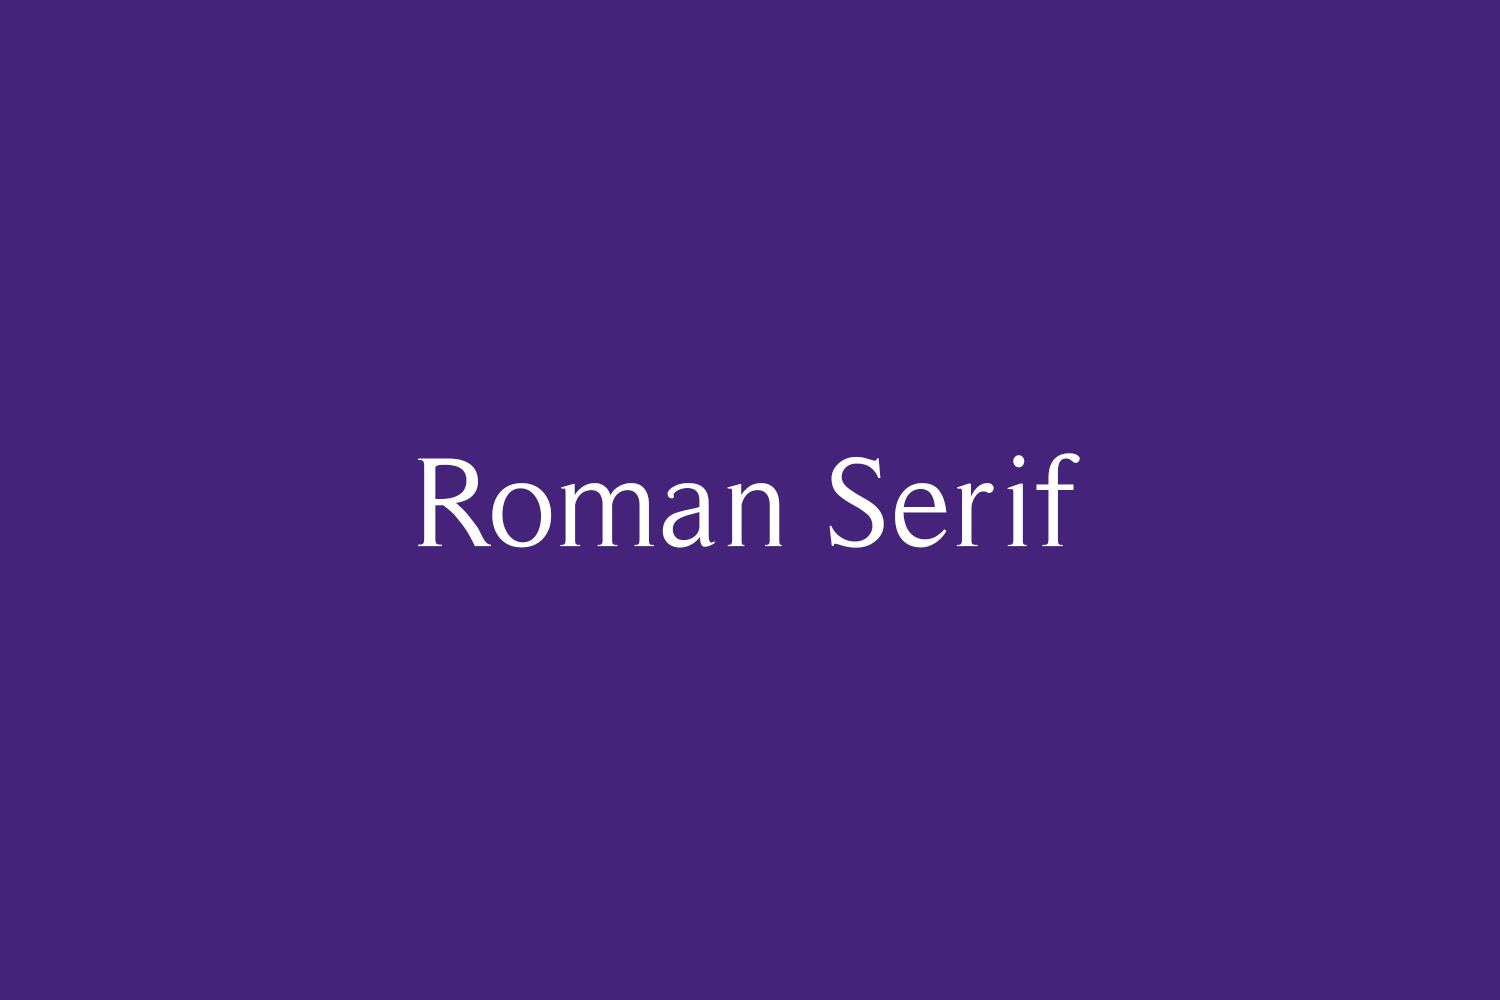 Roman Serif Free Font